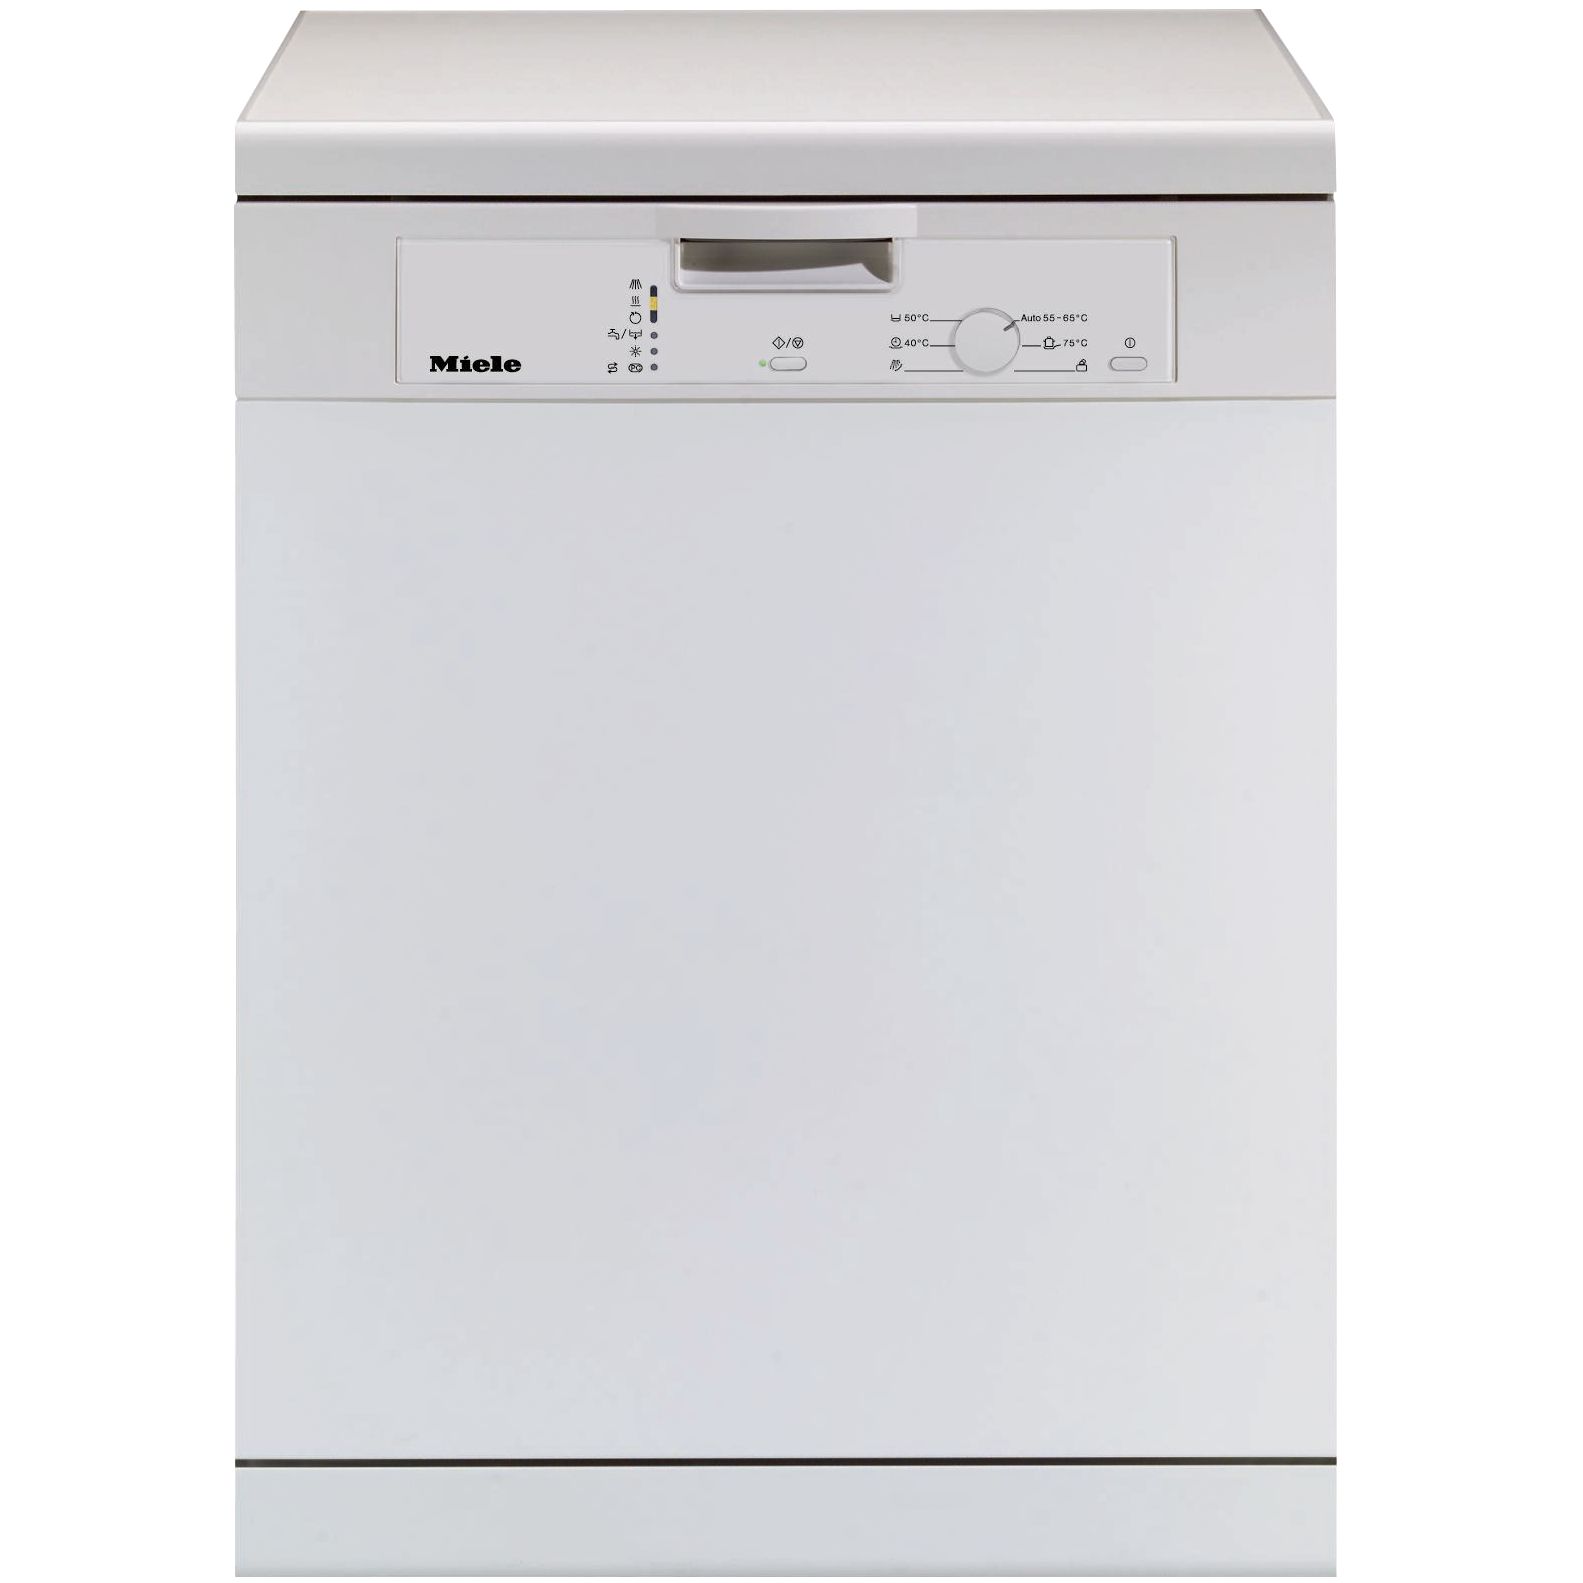 Miele G1022 Dishwasher, White at JohnLewis